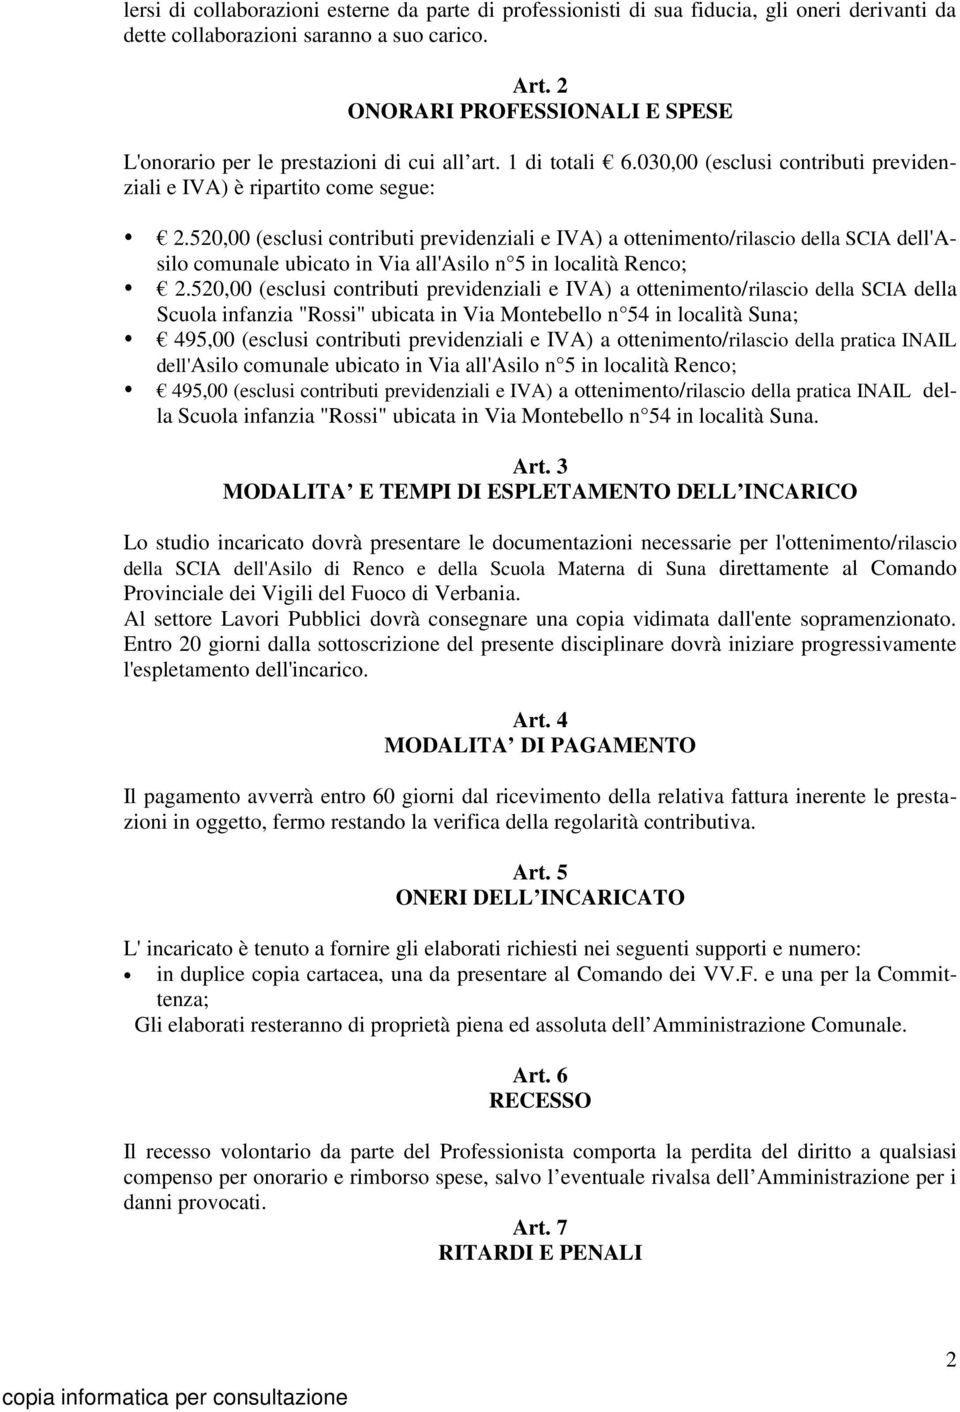 520,00 (esclusi contributi previdenziali e IVA) a ottenimento/rilascio della SCIA dell'asilo comunale ubicato in Via all'asilo n 5 in località Renco; 2.